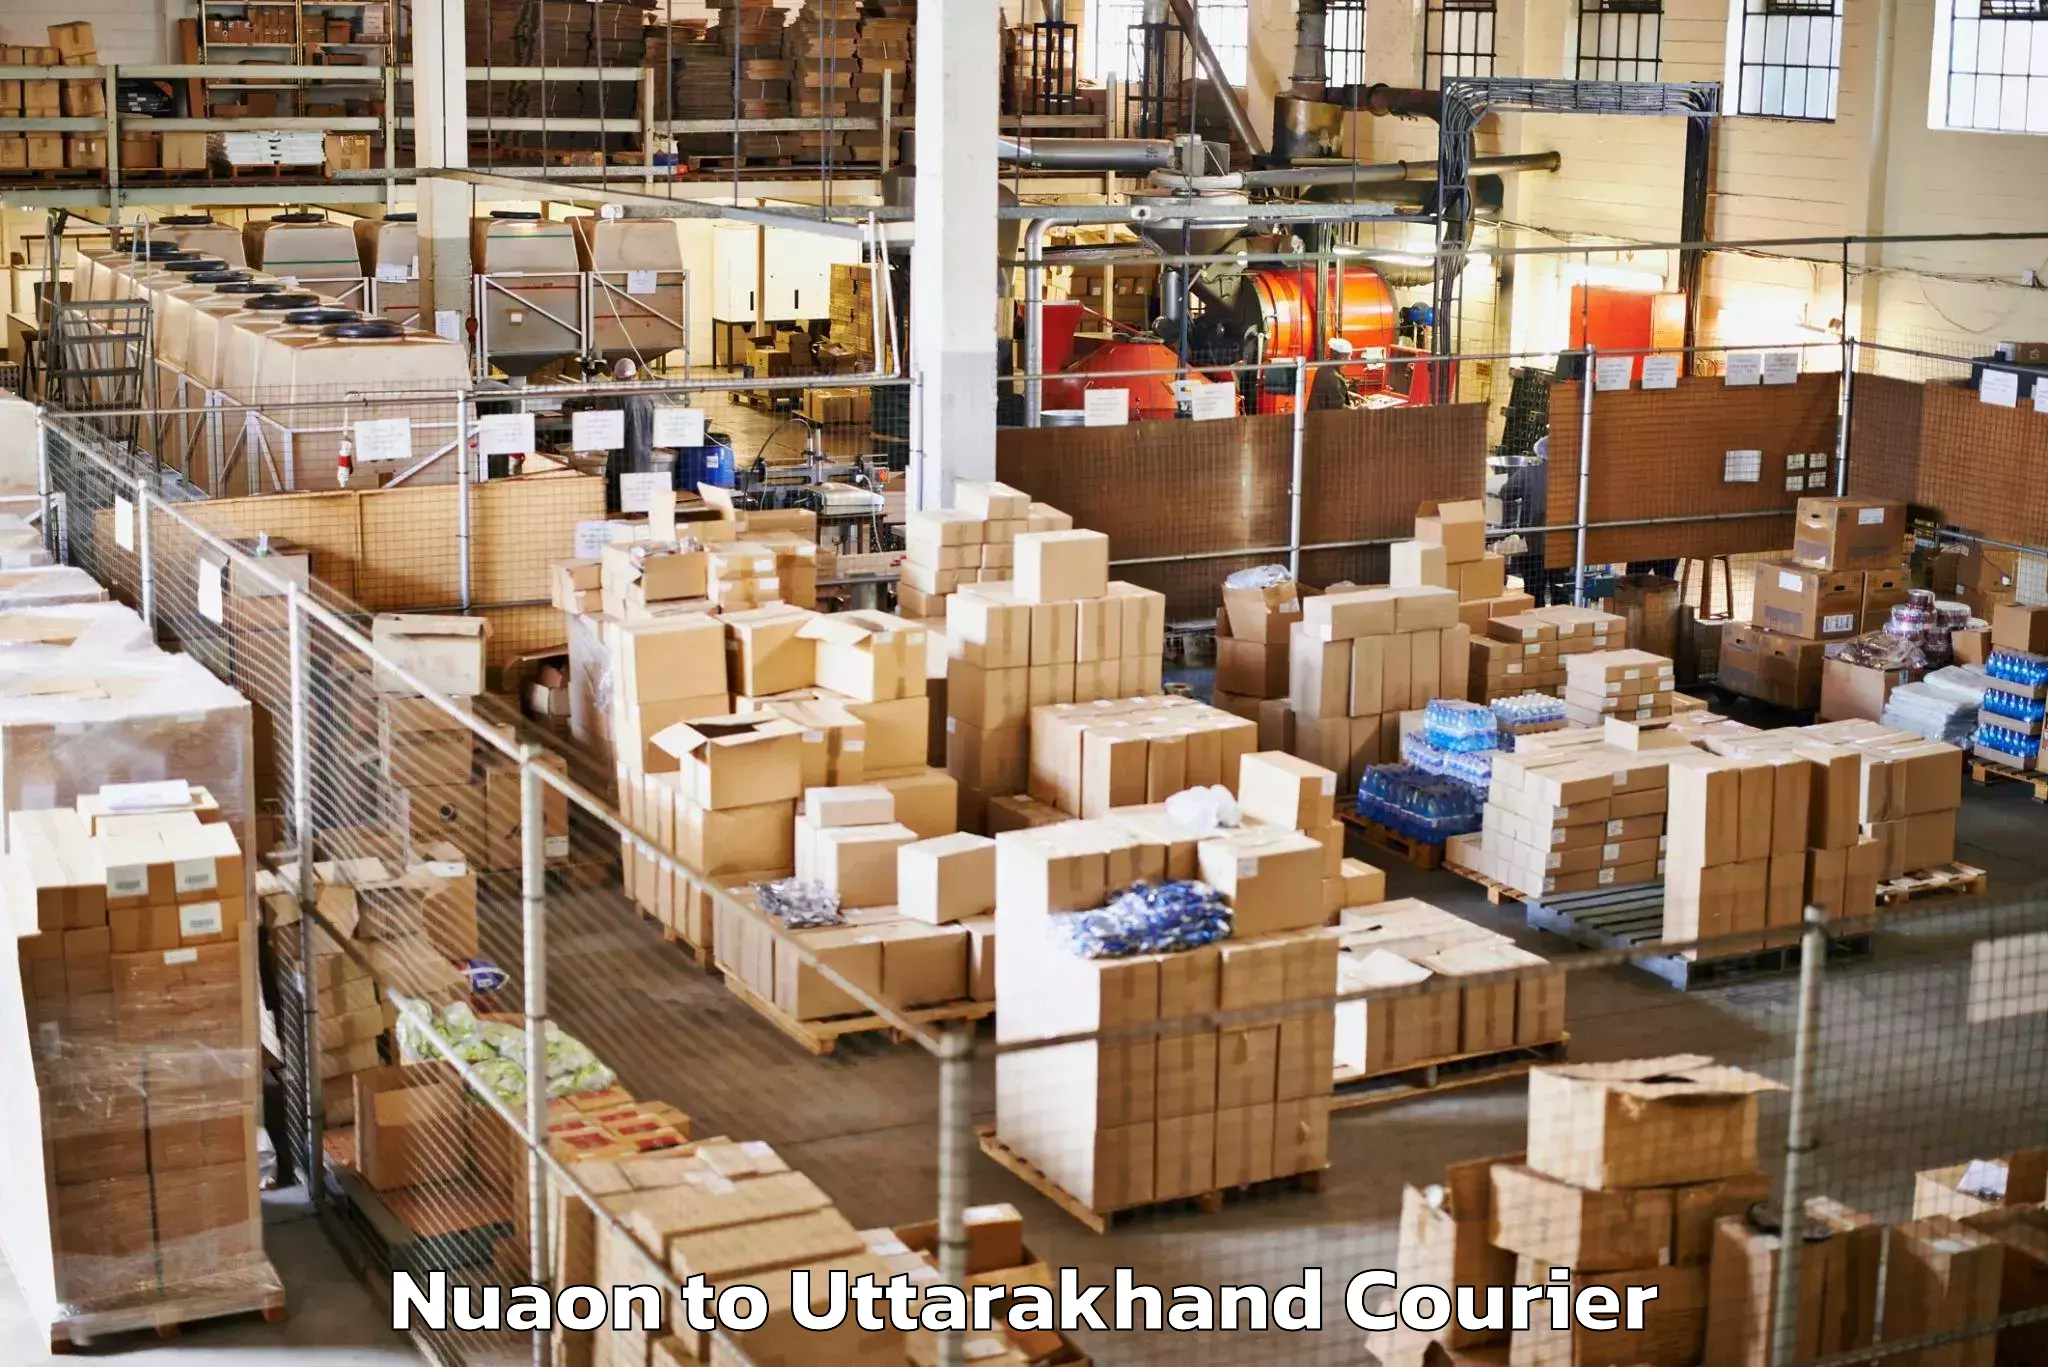 Luggage transport company Nuaon to Uttarakhand